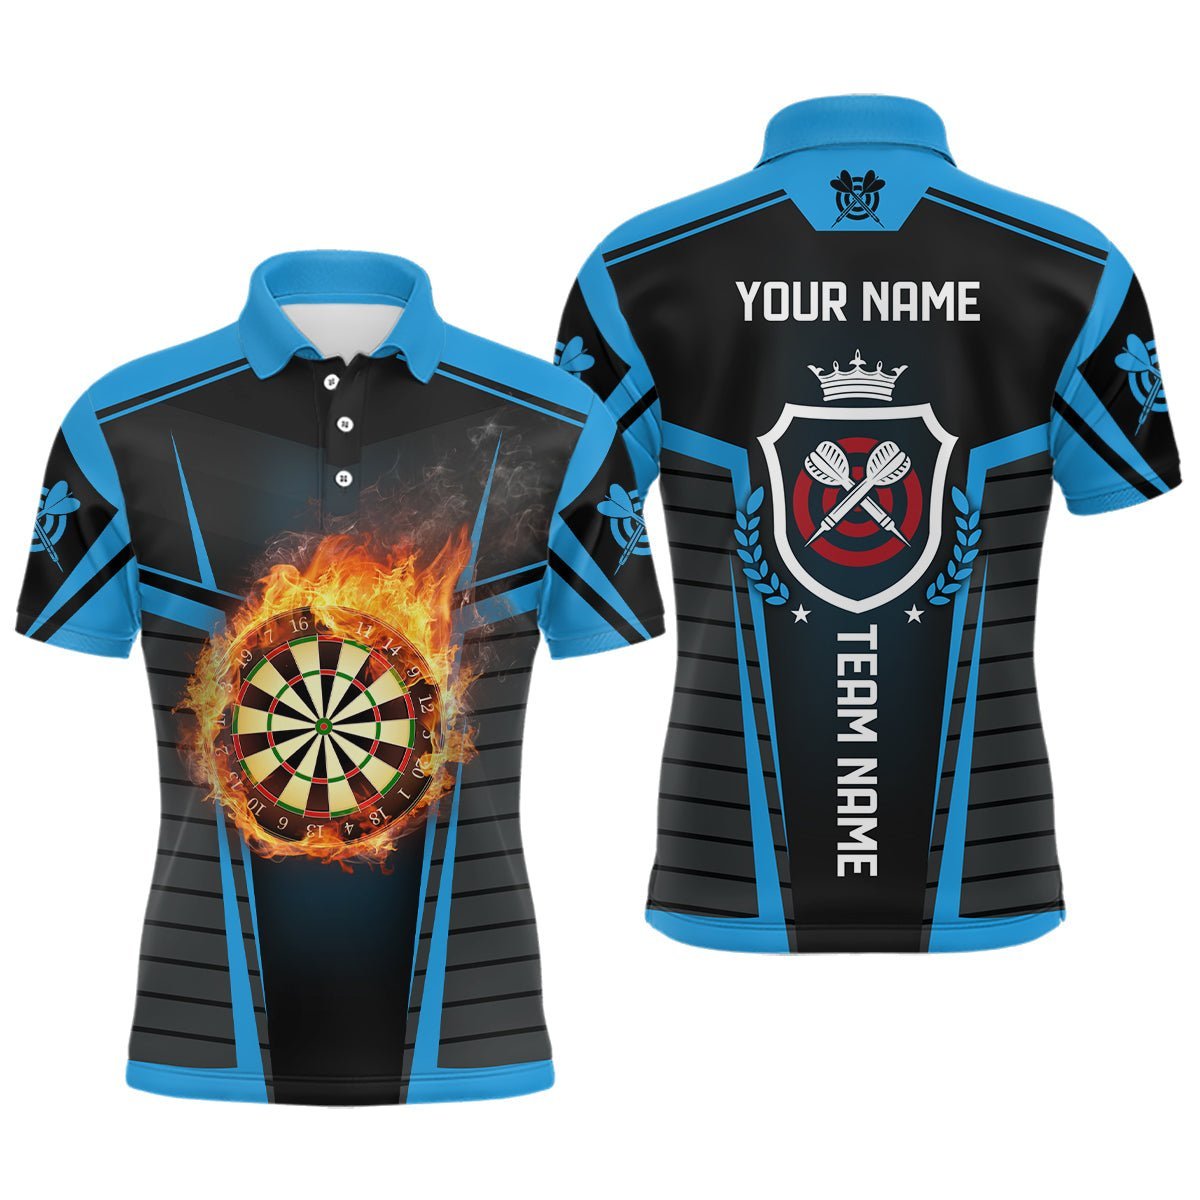 Herren Darts-Shirt mit Flammenmuster in Schwarz und Blau, individuell anpassbares cooles Darts-Shirt für Männer, Dart-Trikots K170 - Climcat